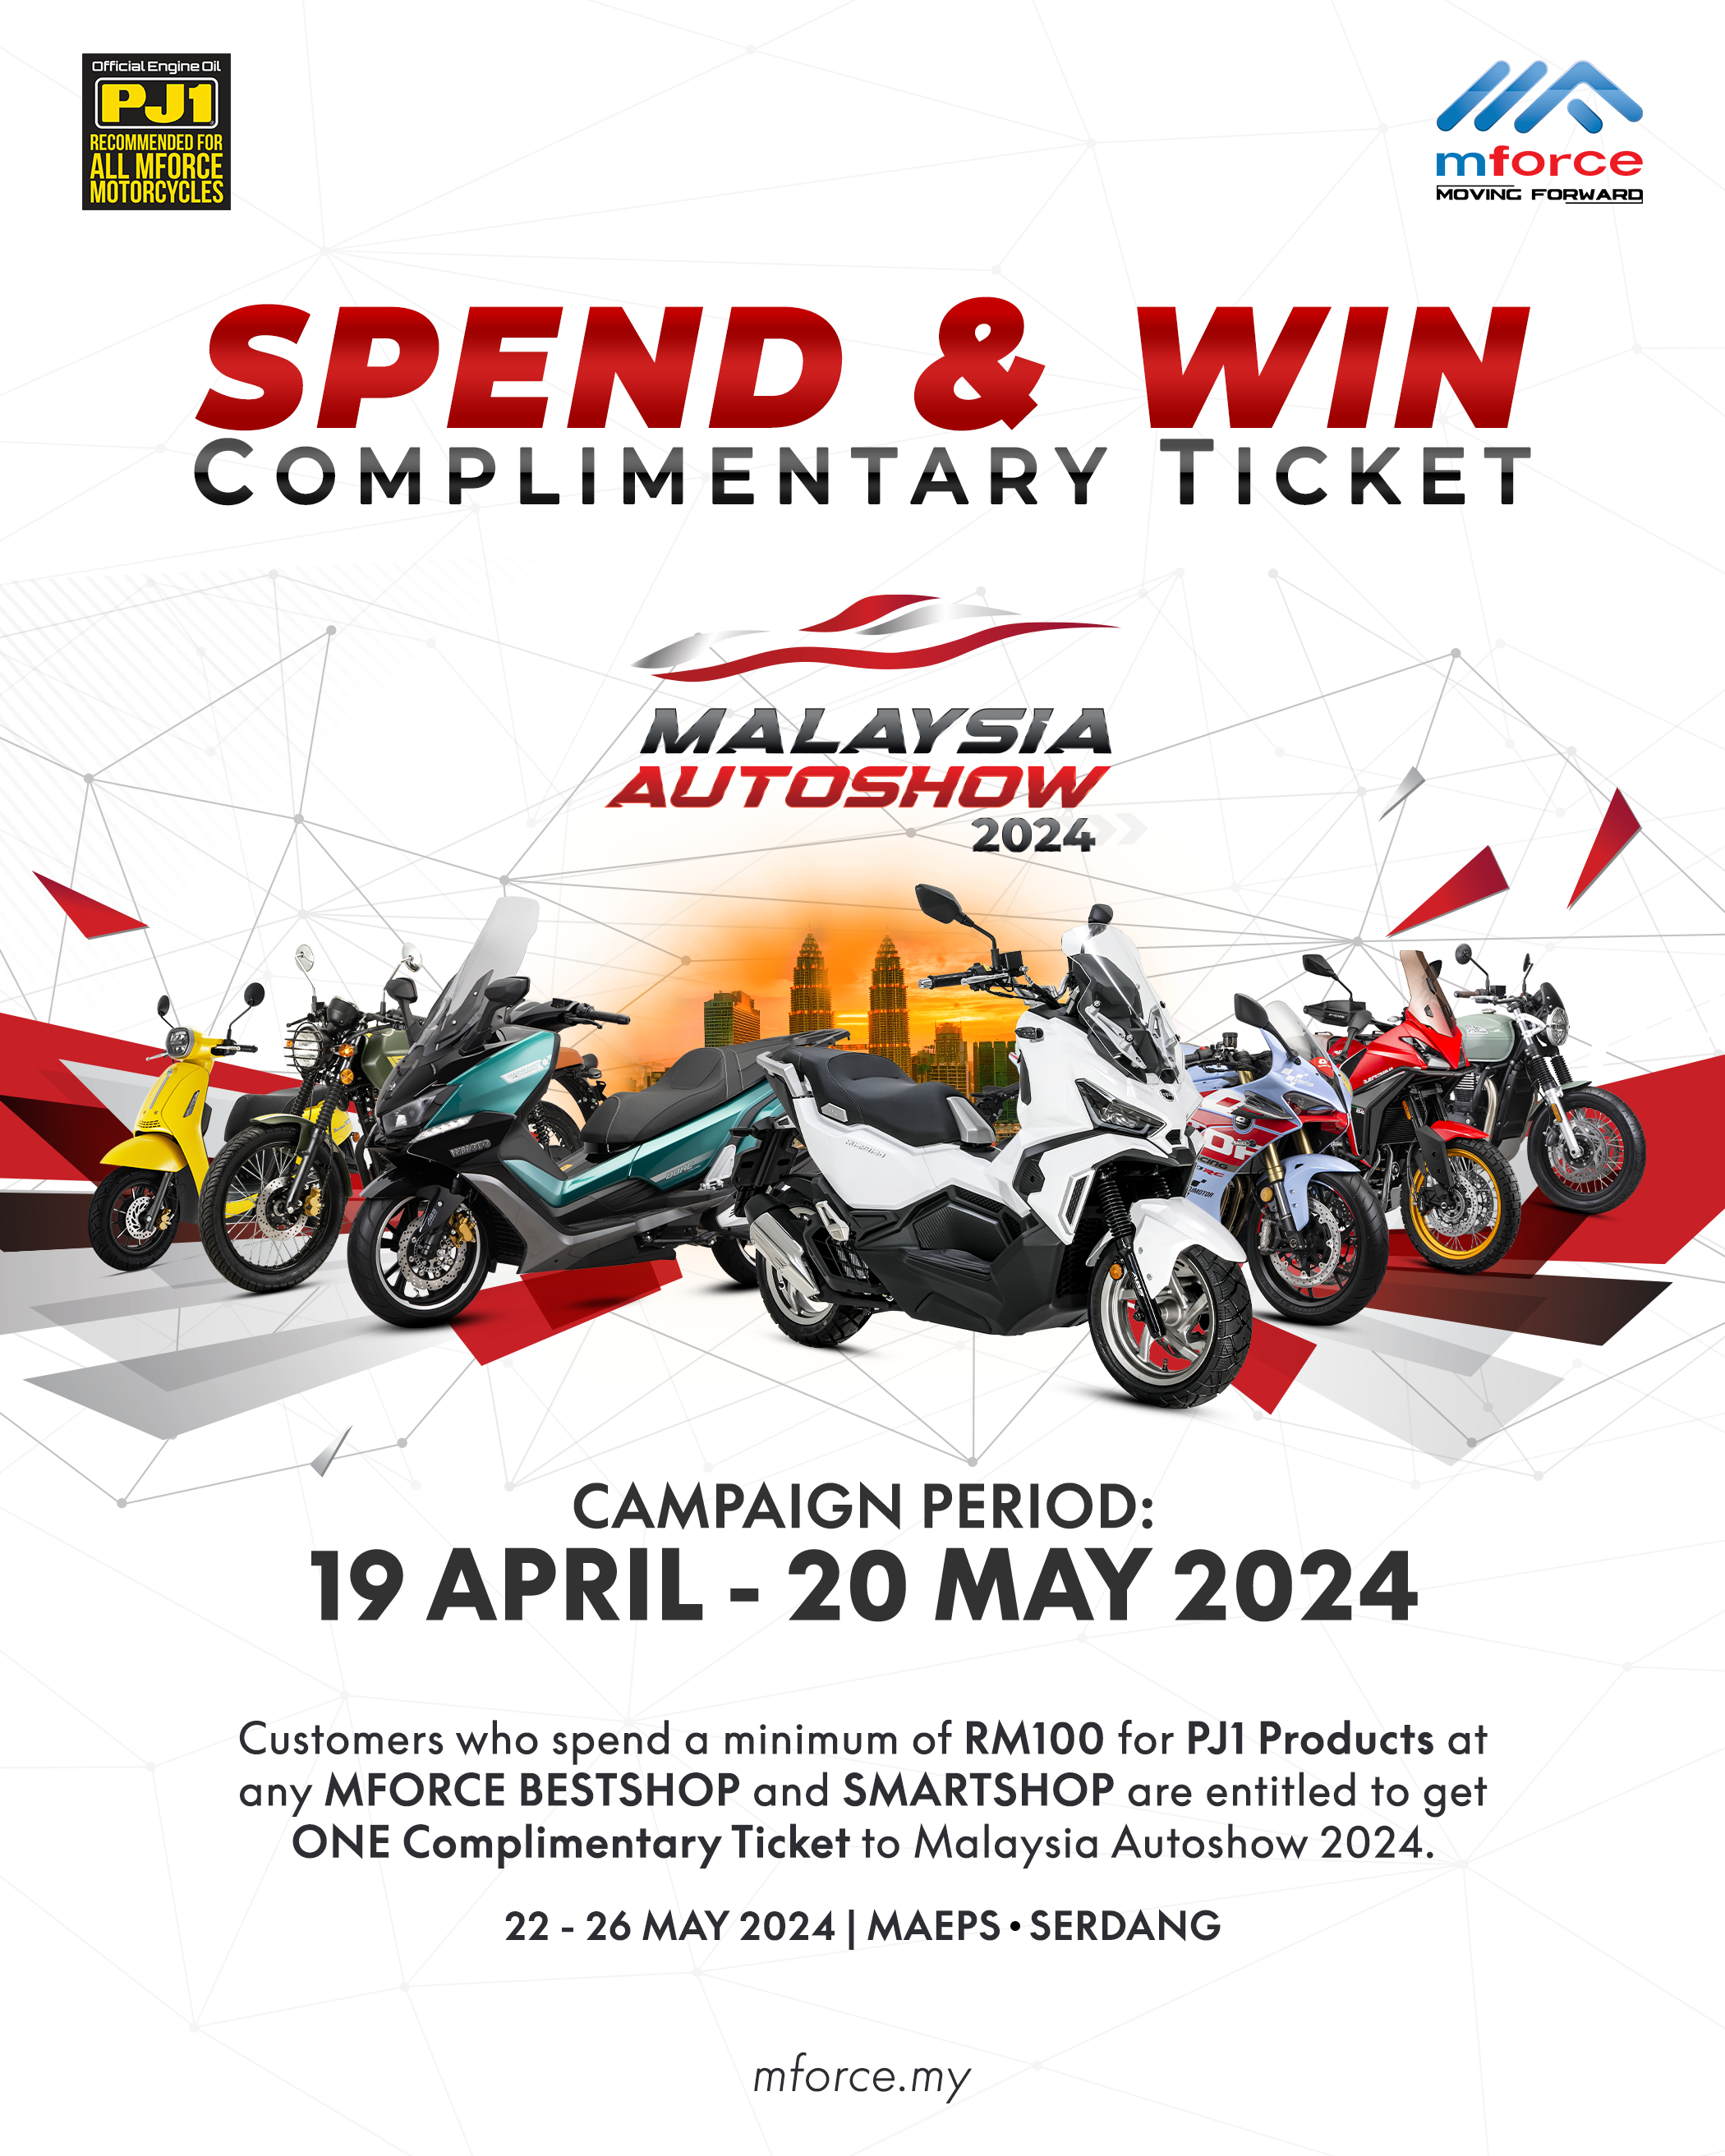 Malaysia Autoshow 2024 with Mforce